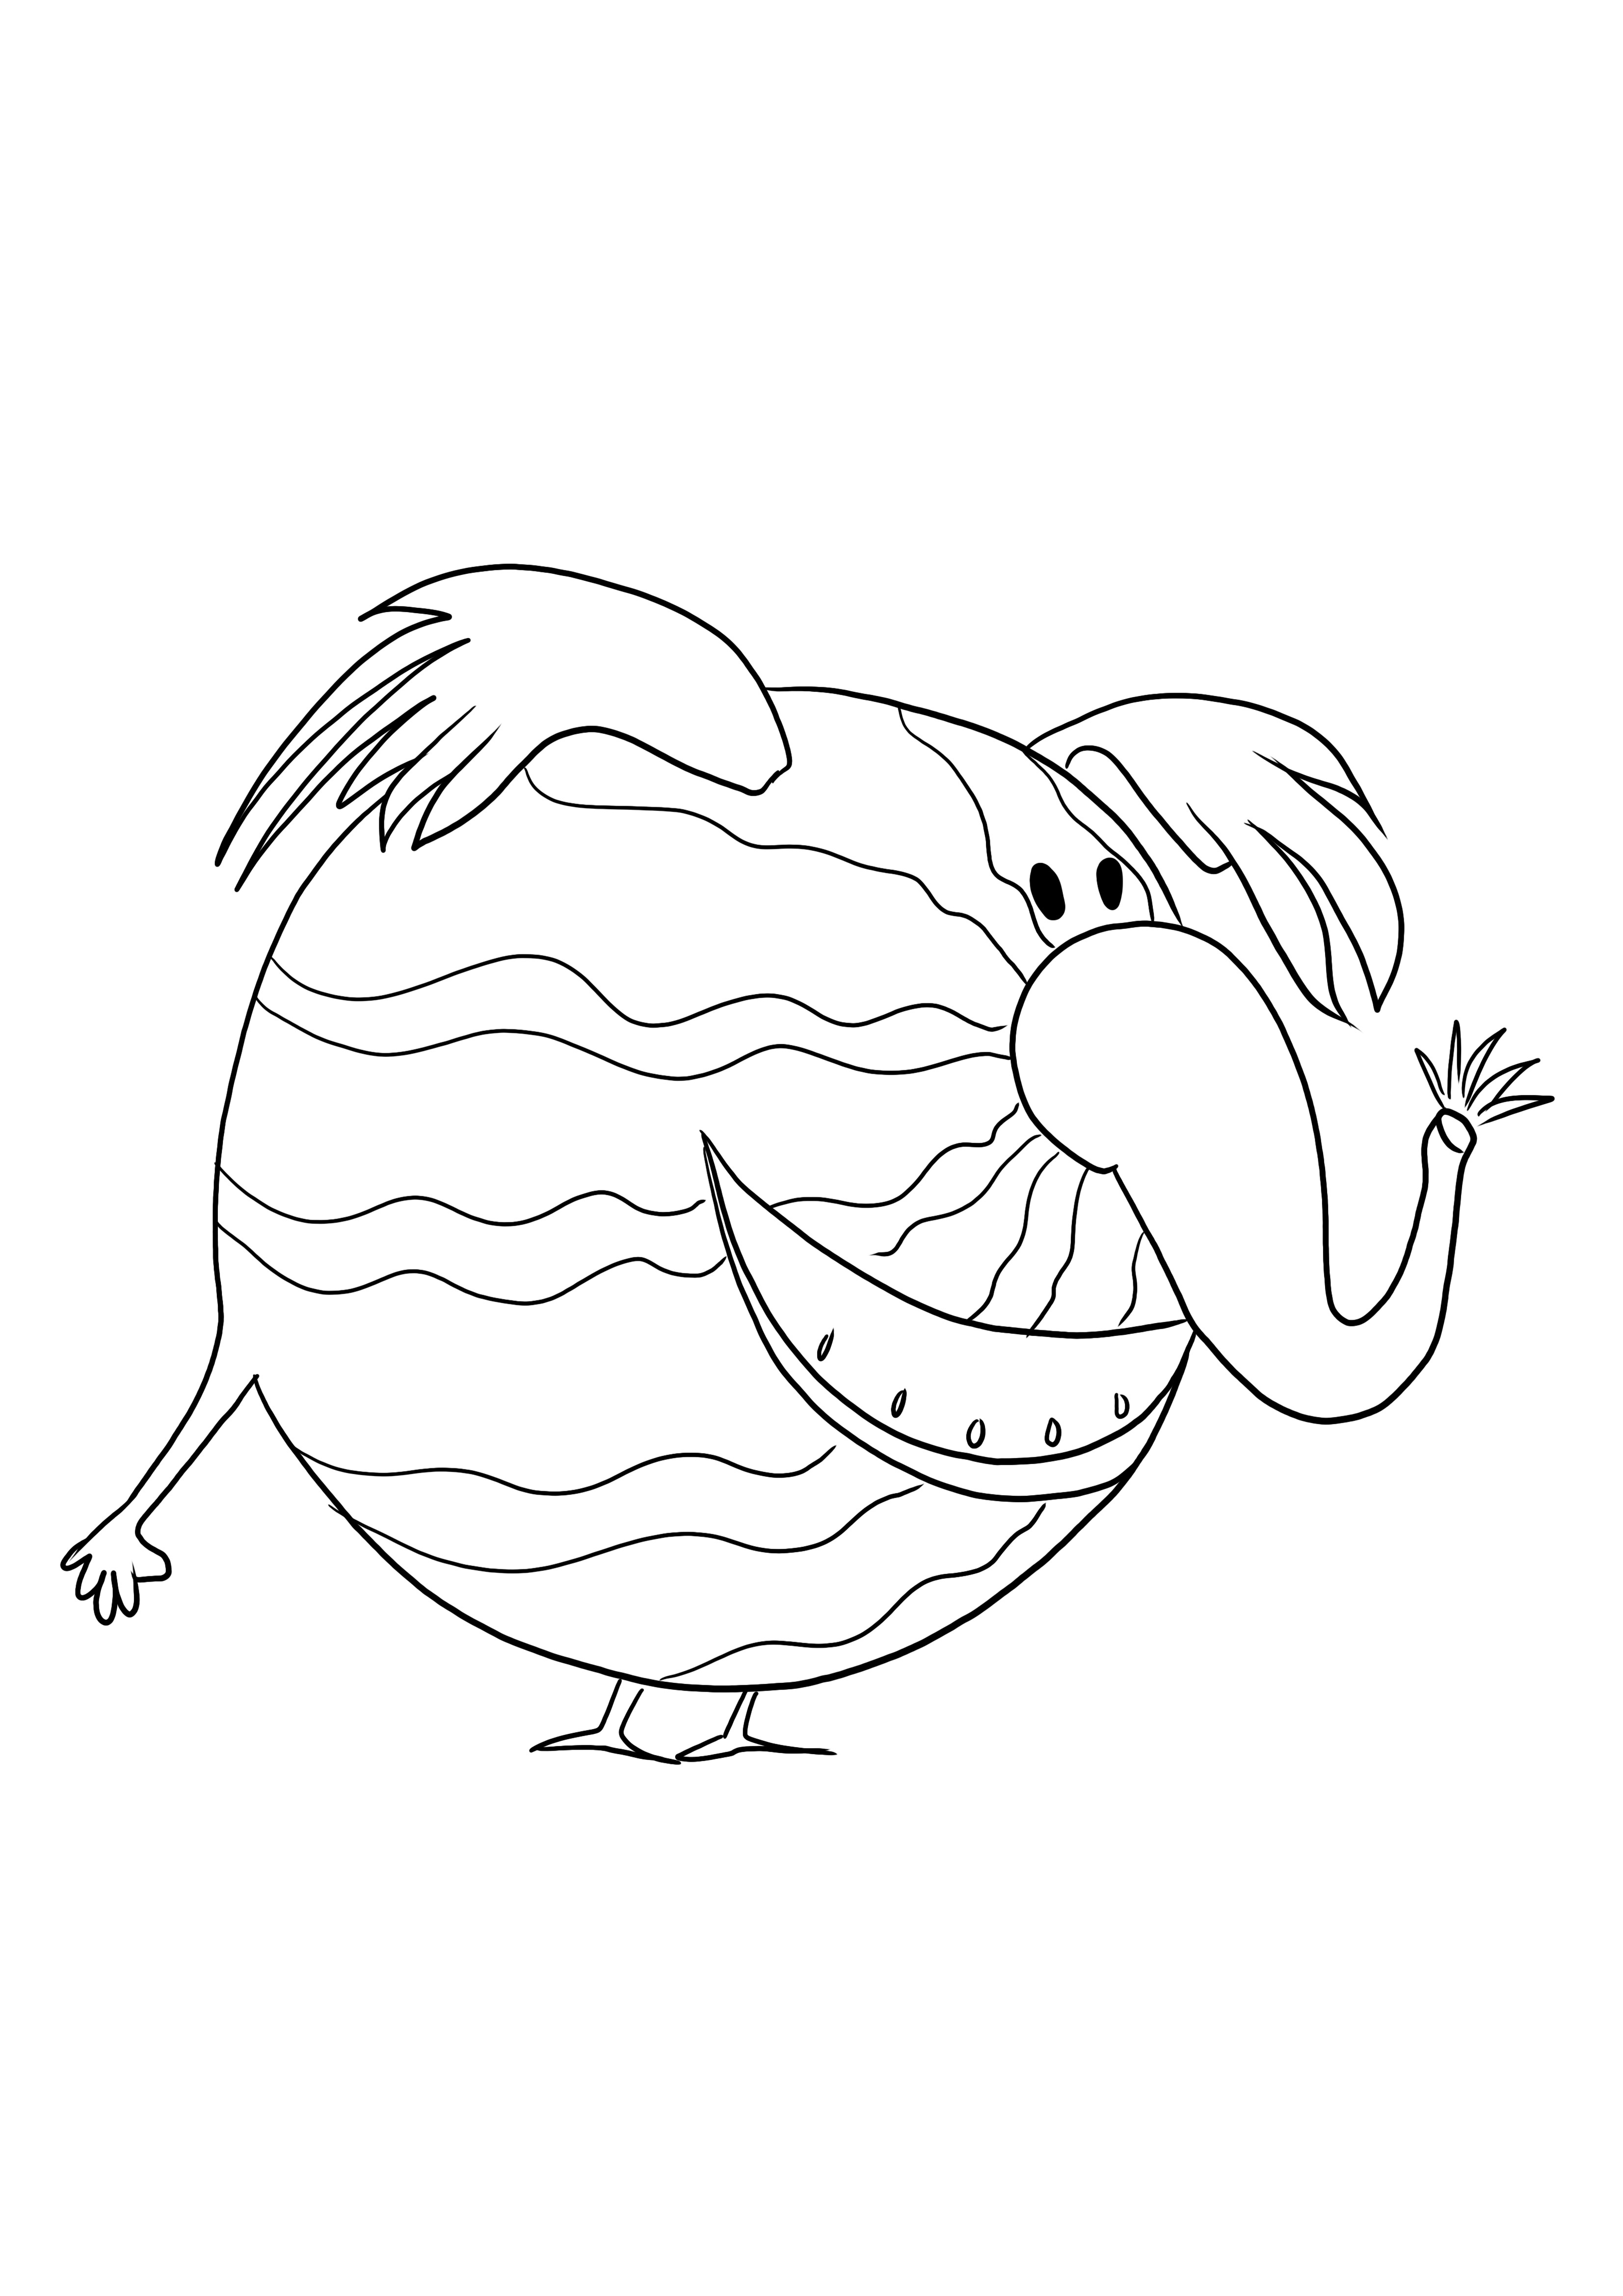 Happy Watermelephant está pronto para ser colorido e impresso ou baixado gratuitamente